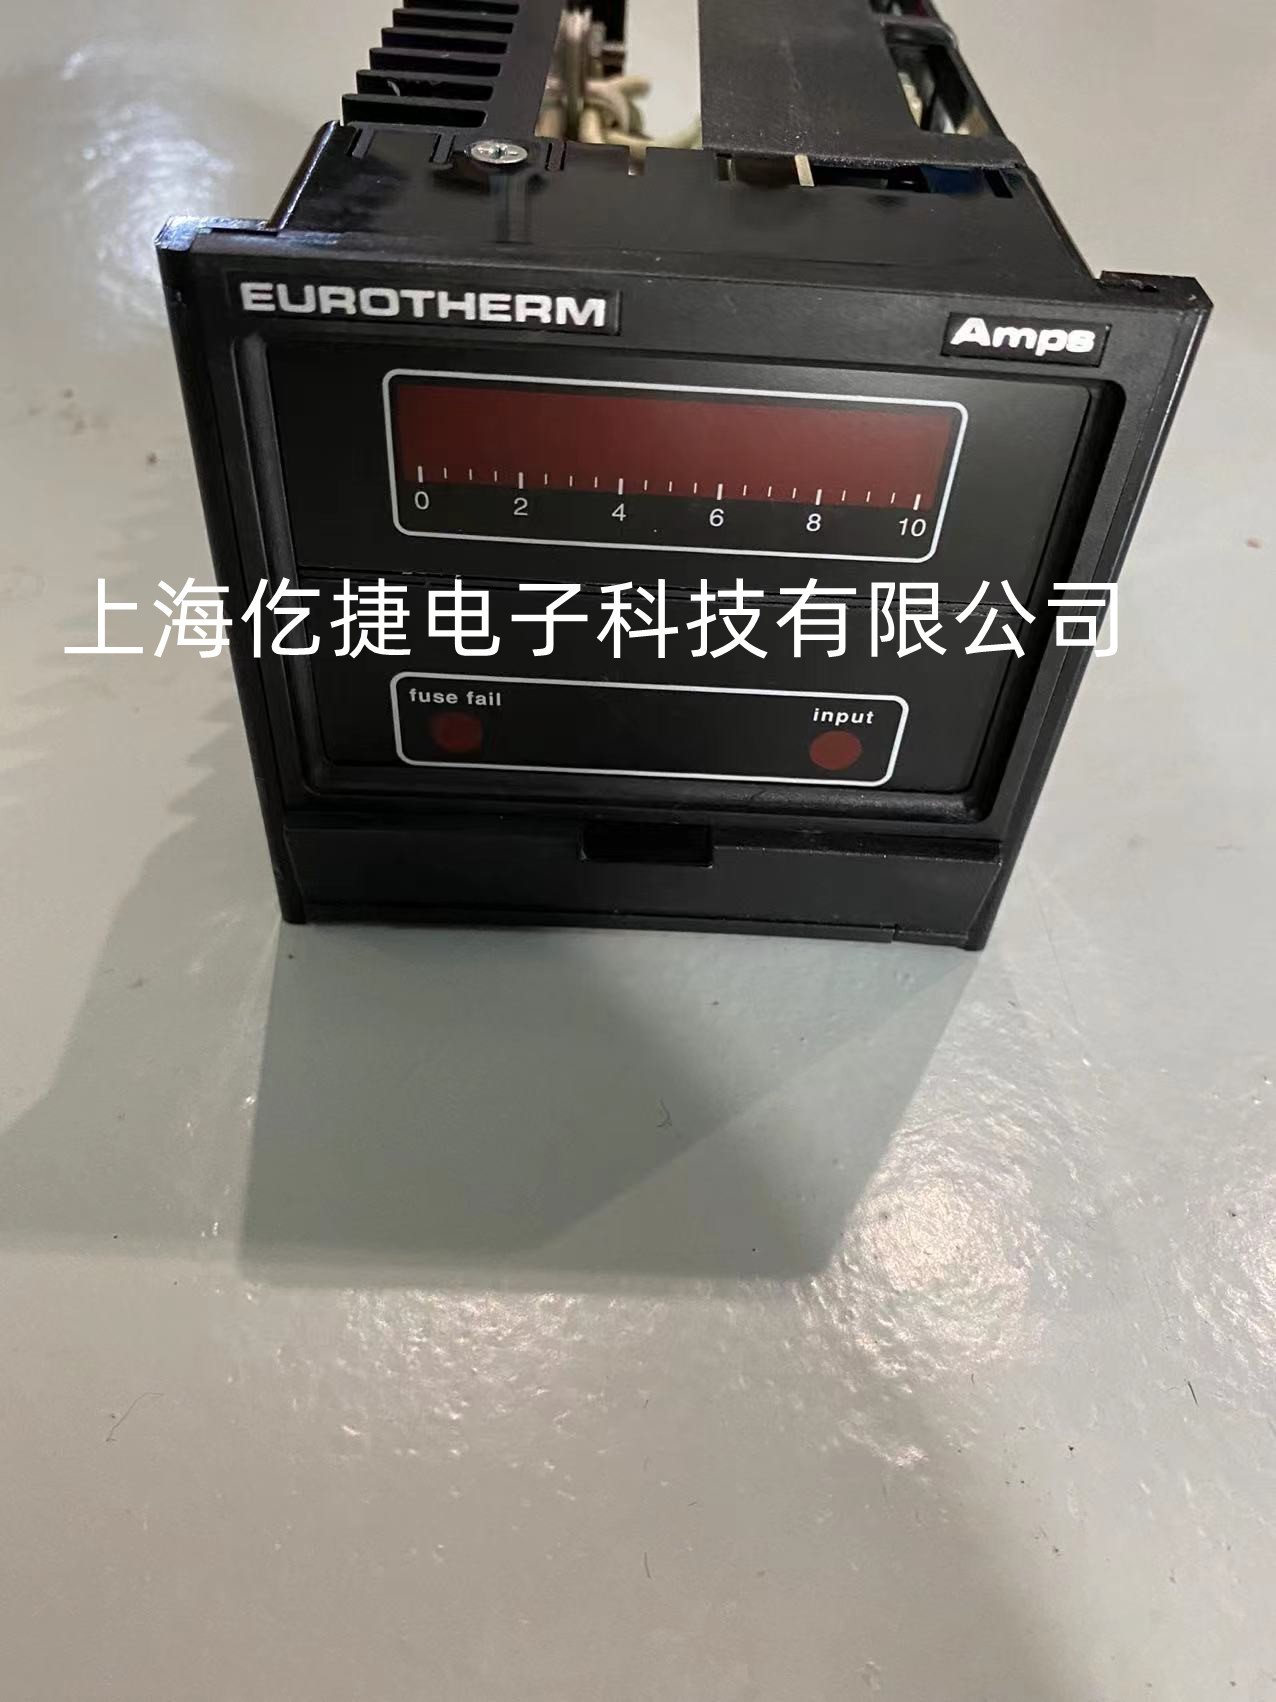 上海地区Eurotherm欧陆温控器维修